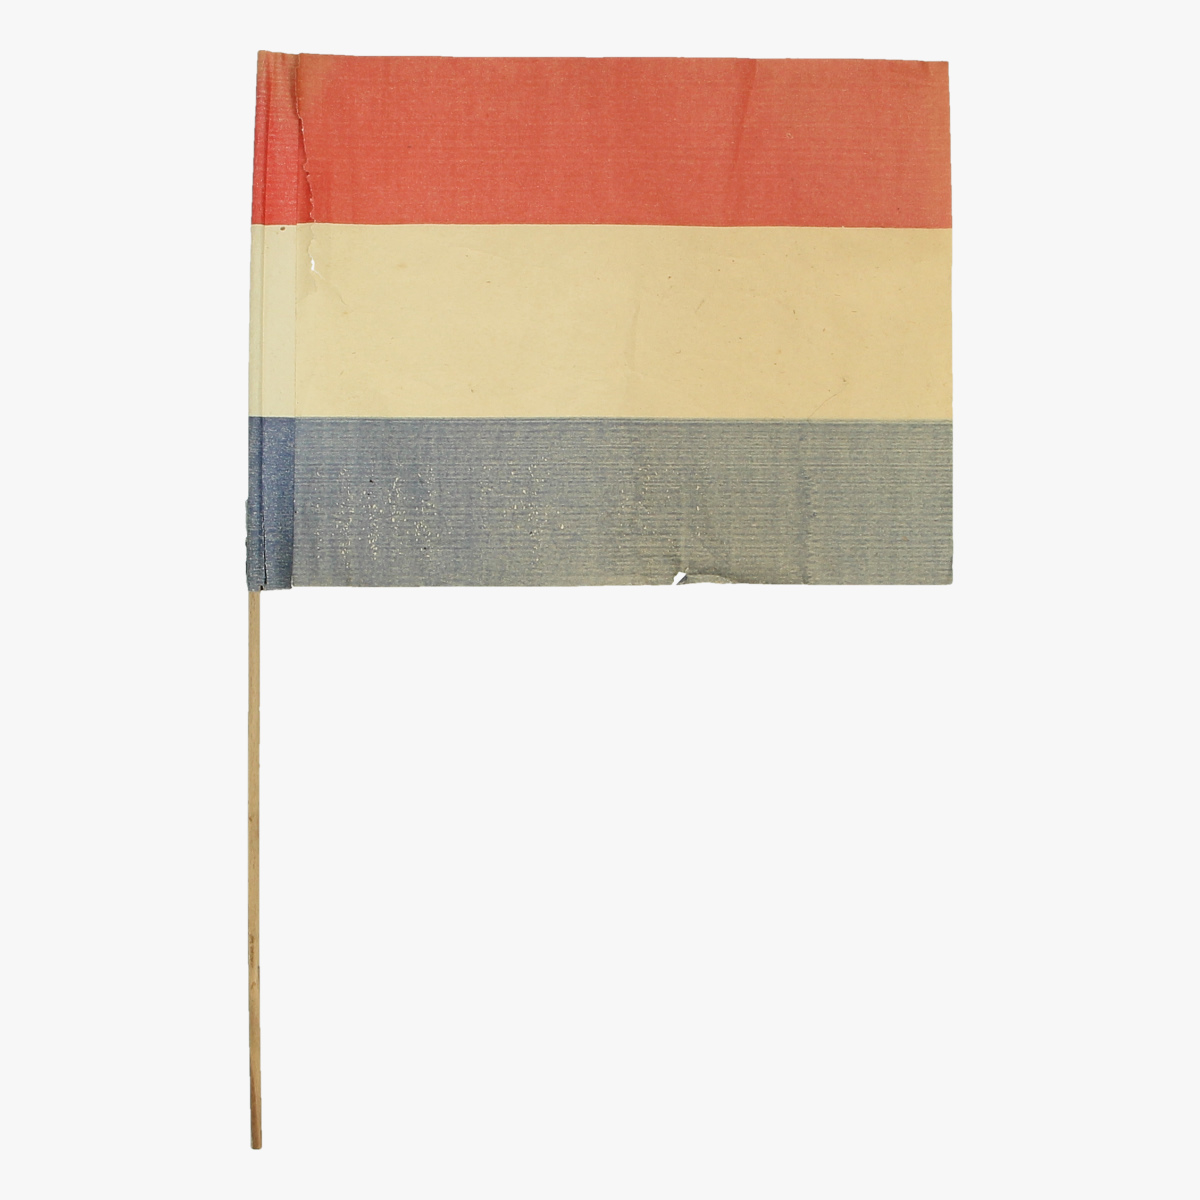 Afbeeldingen van expo 58 papieren nederlandse vlag 